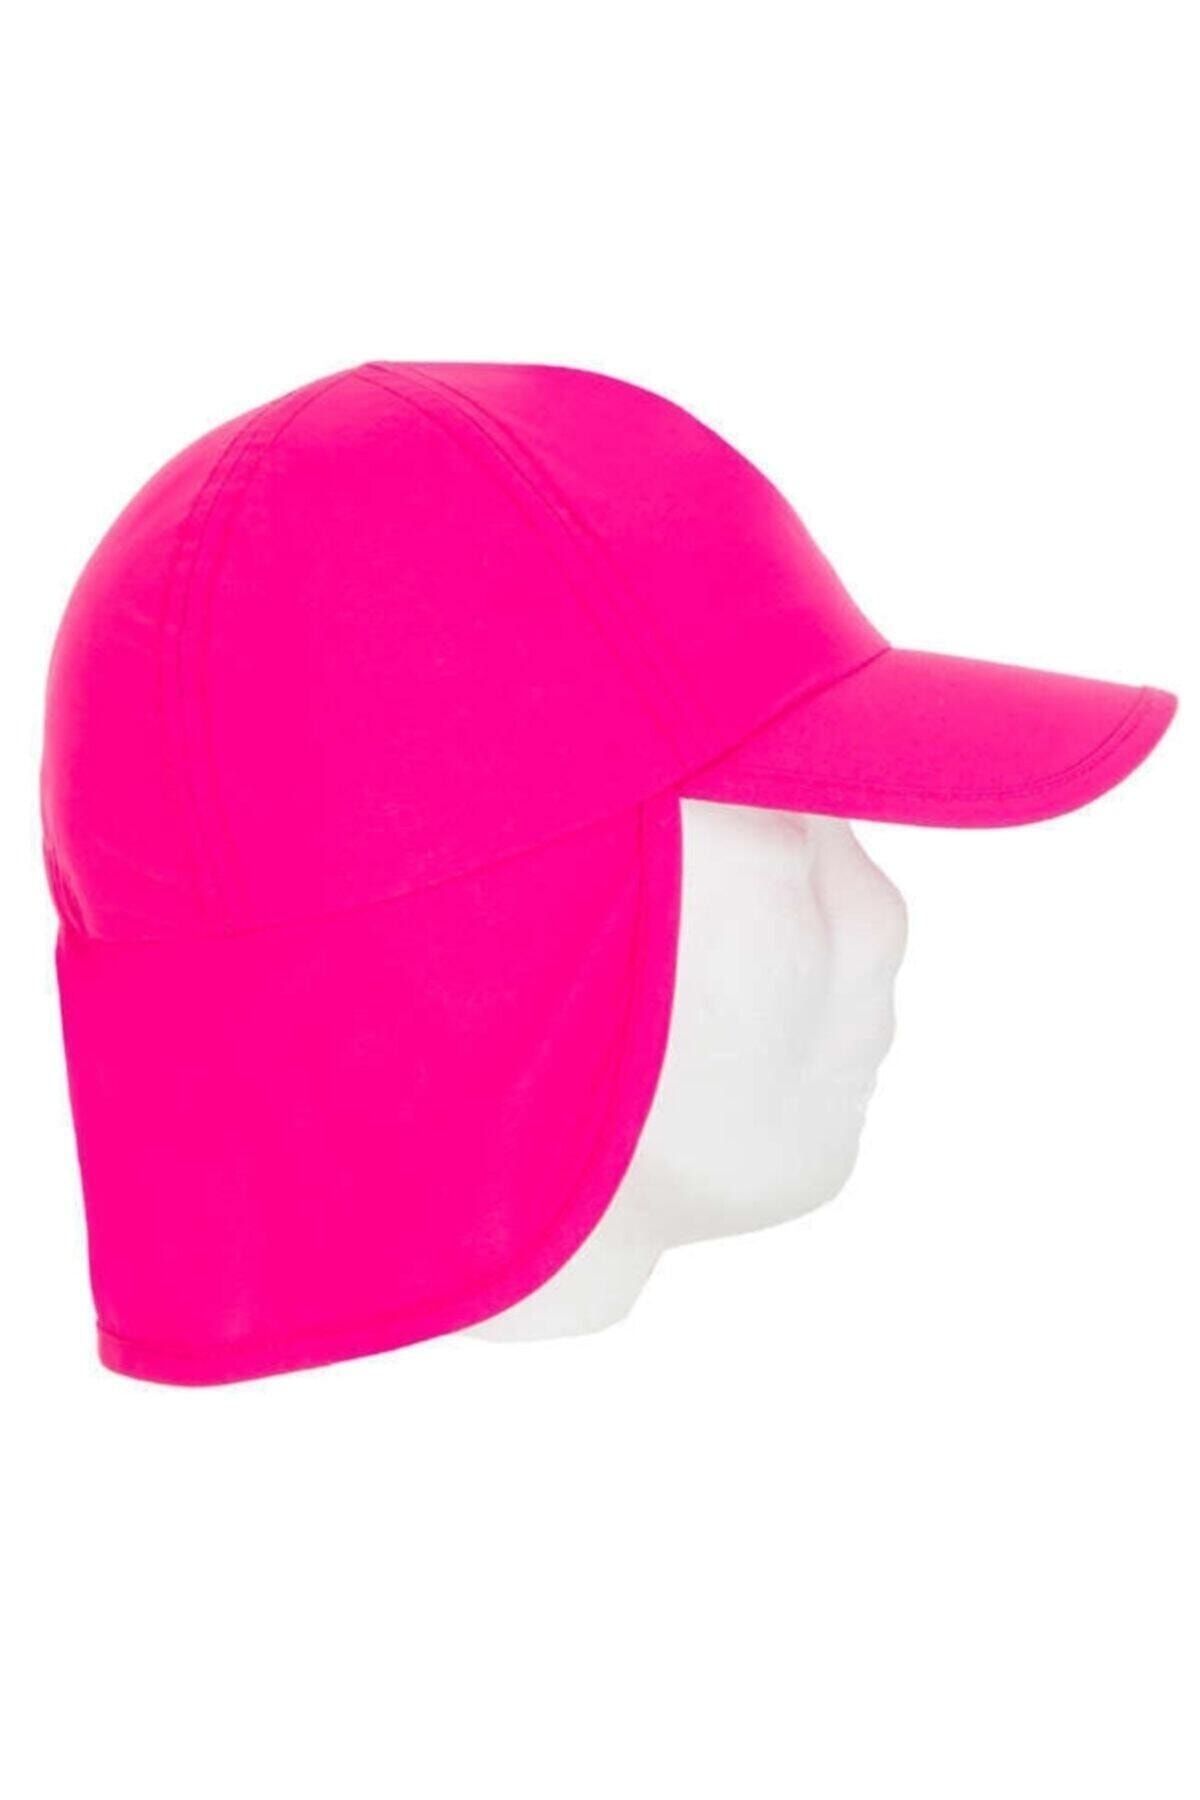 Decathlon - Güneş Işığı Uv Korumalı Bebek Şapka Açık Fuşya